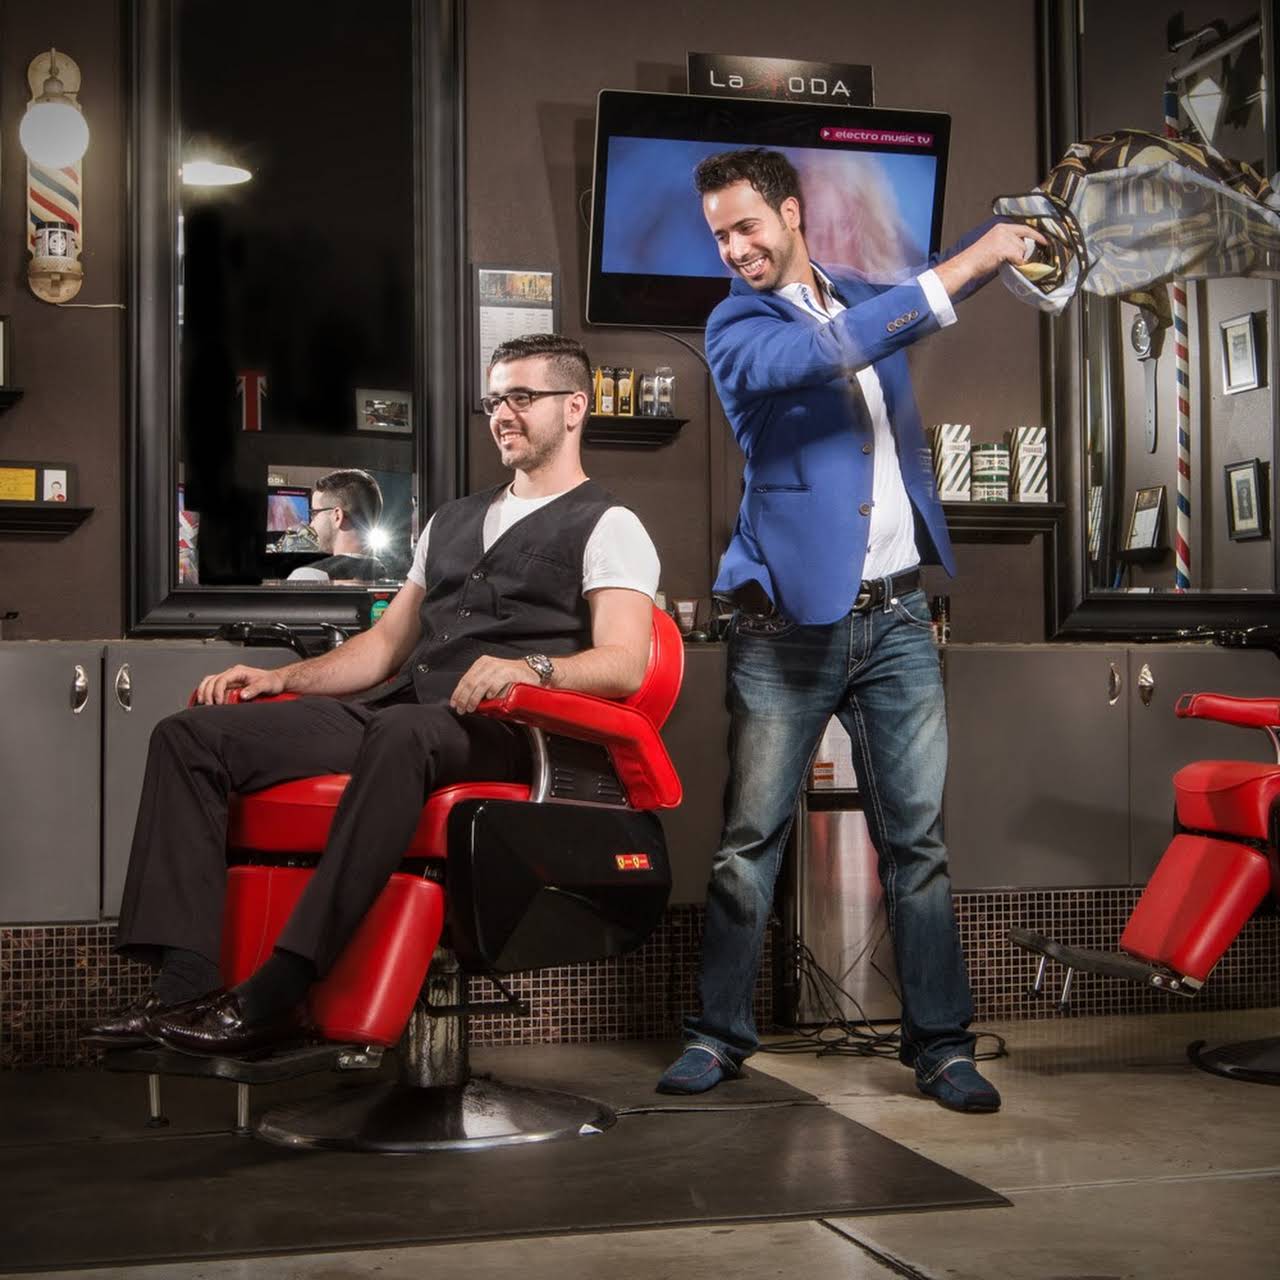 La Moda Barber Shop - Barber Shop Lounge in Toledo